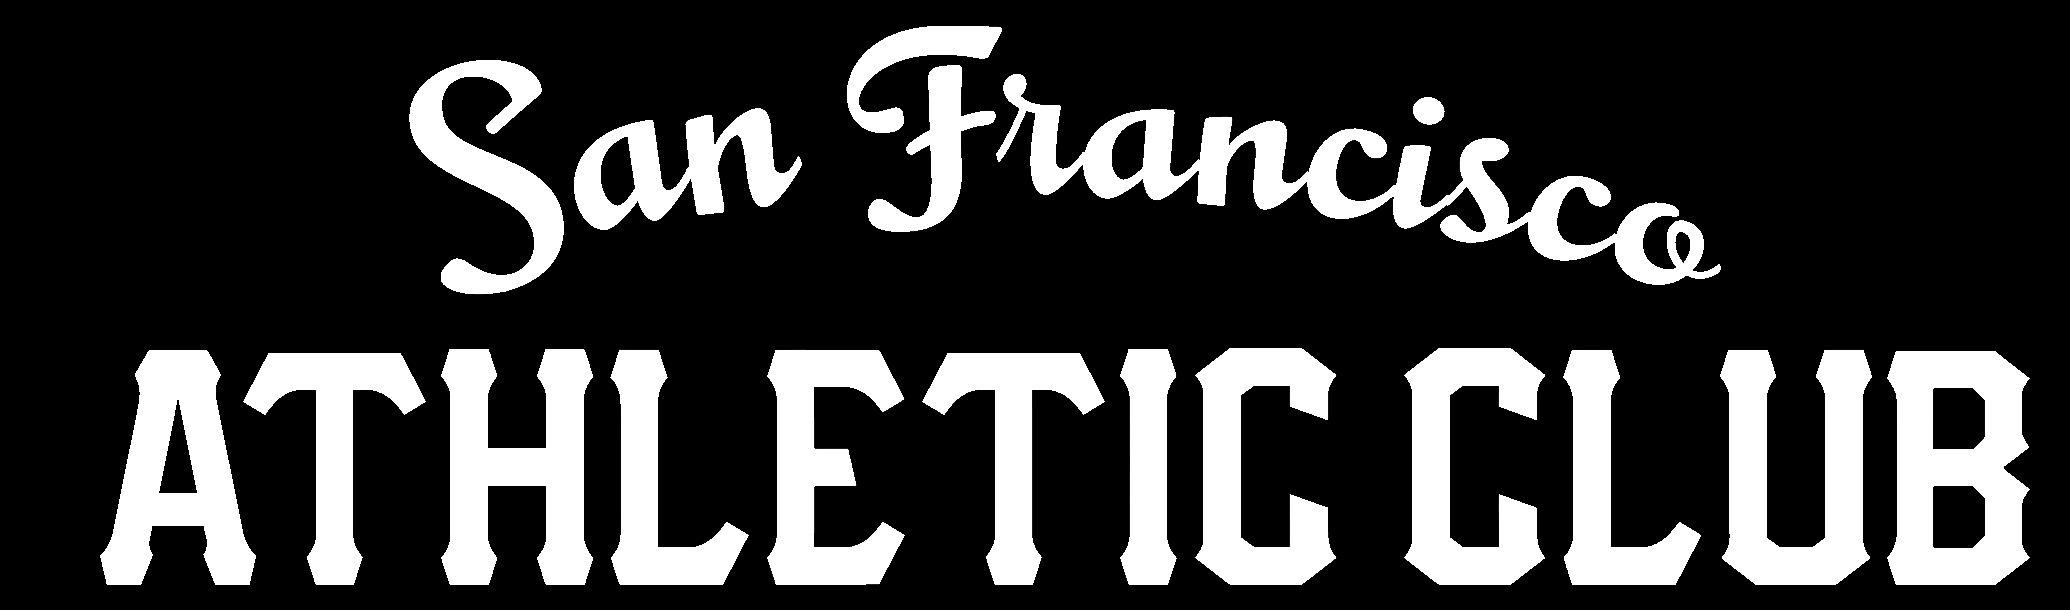 San Francisco Athletic Club (SFAC)